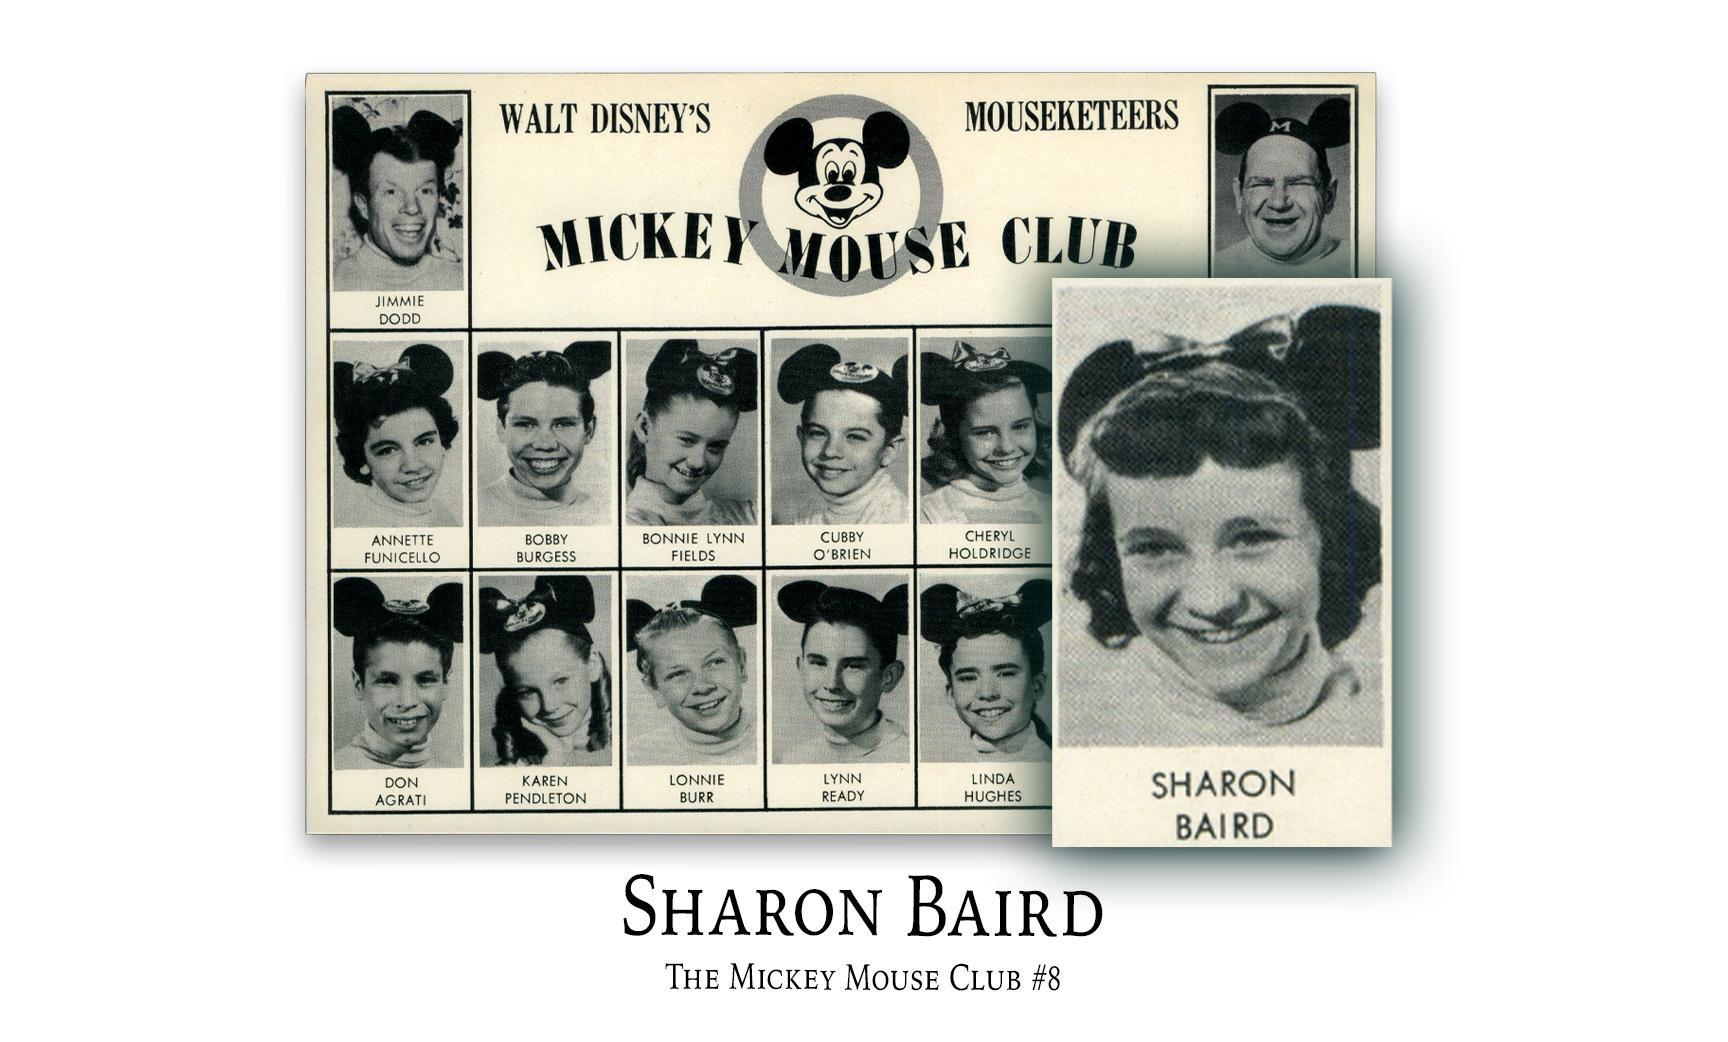 Karen Pendleton: The Mickey Mouse Club #6